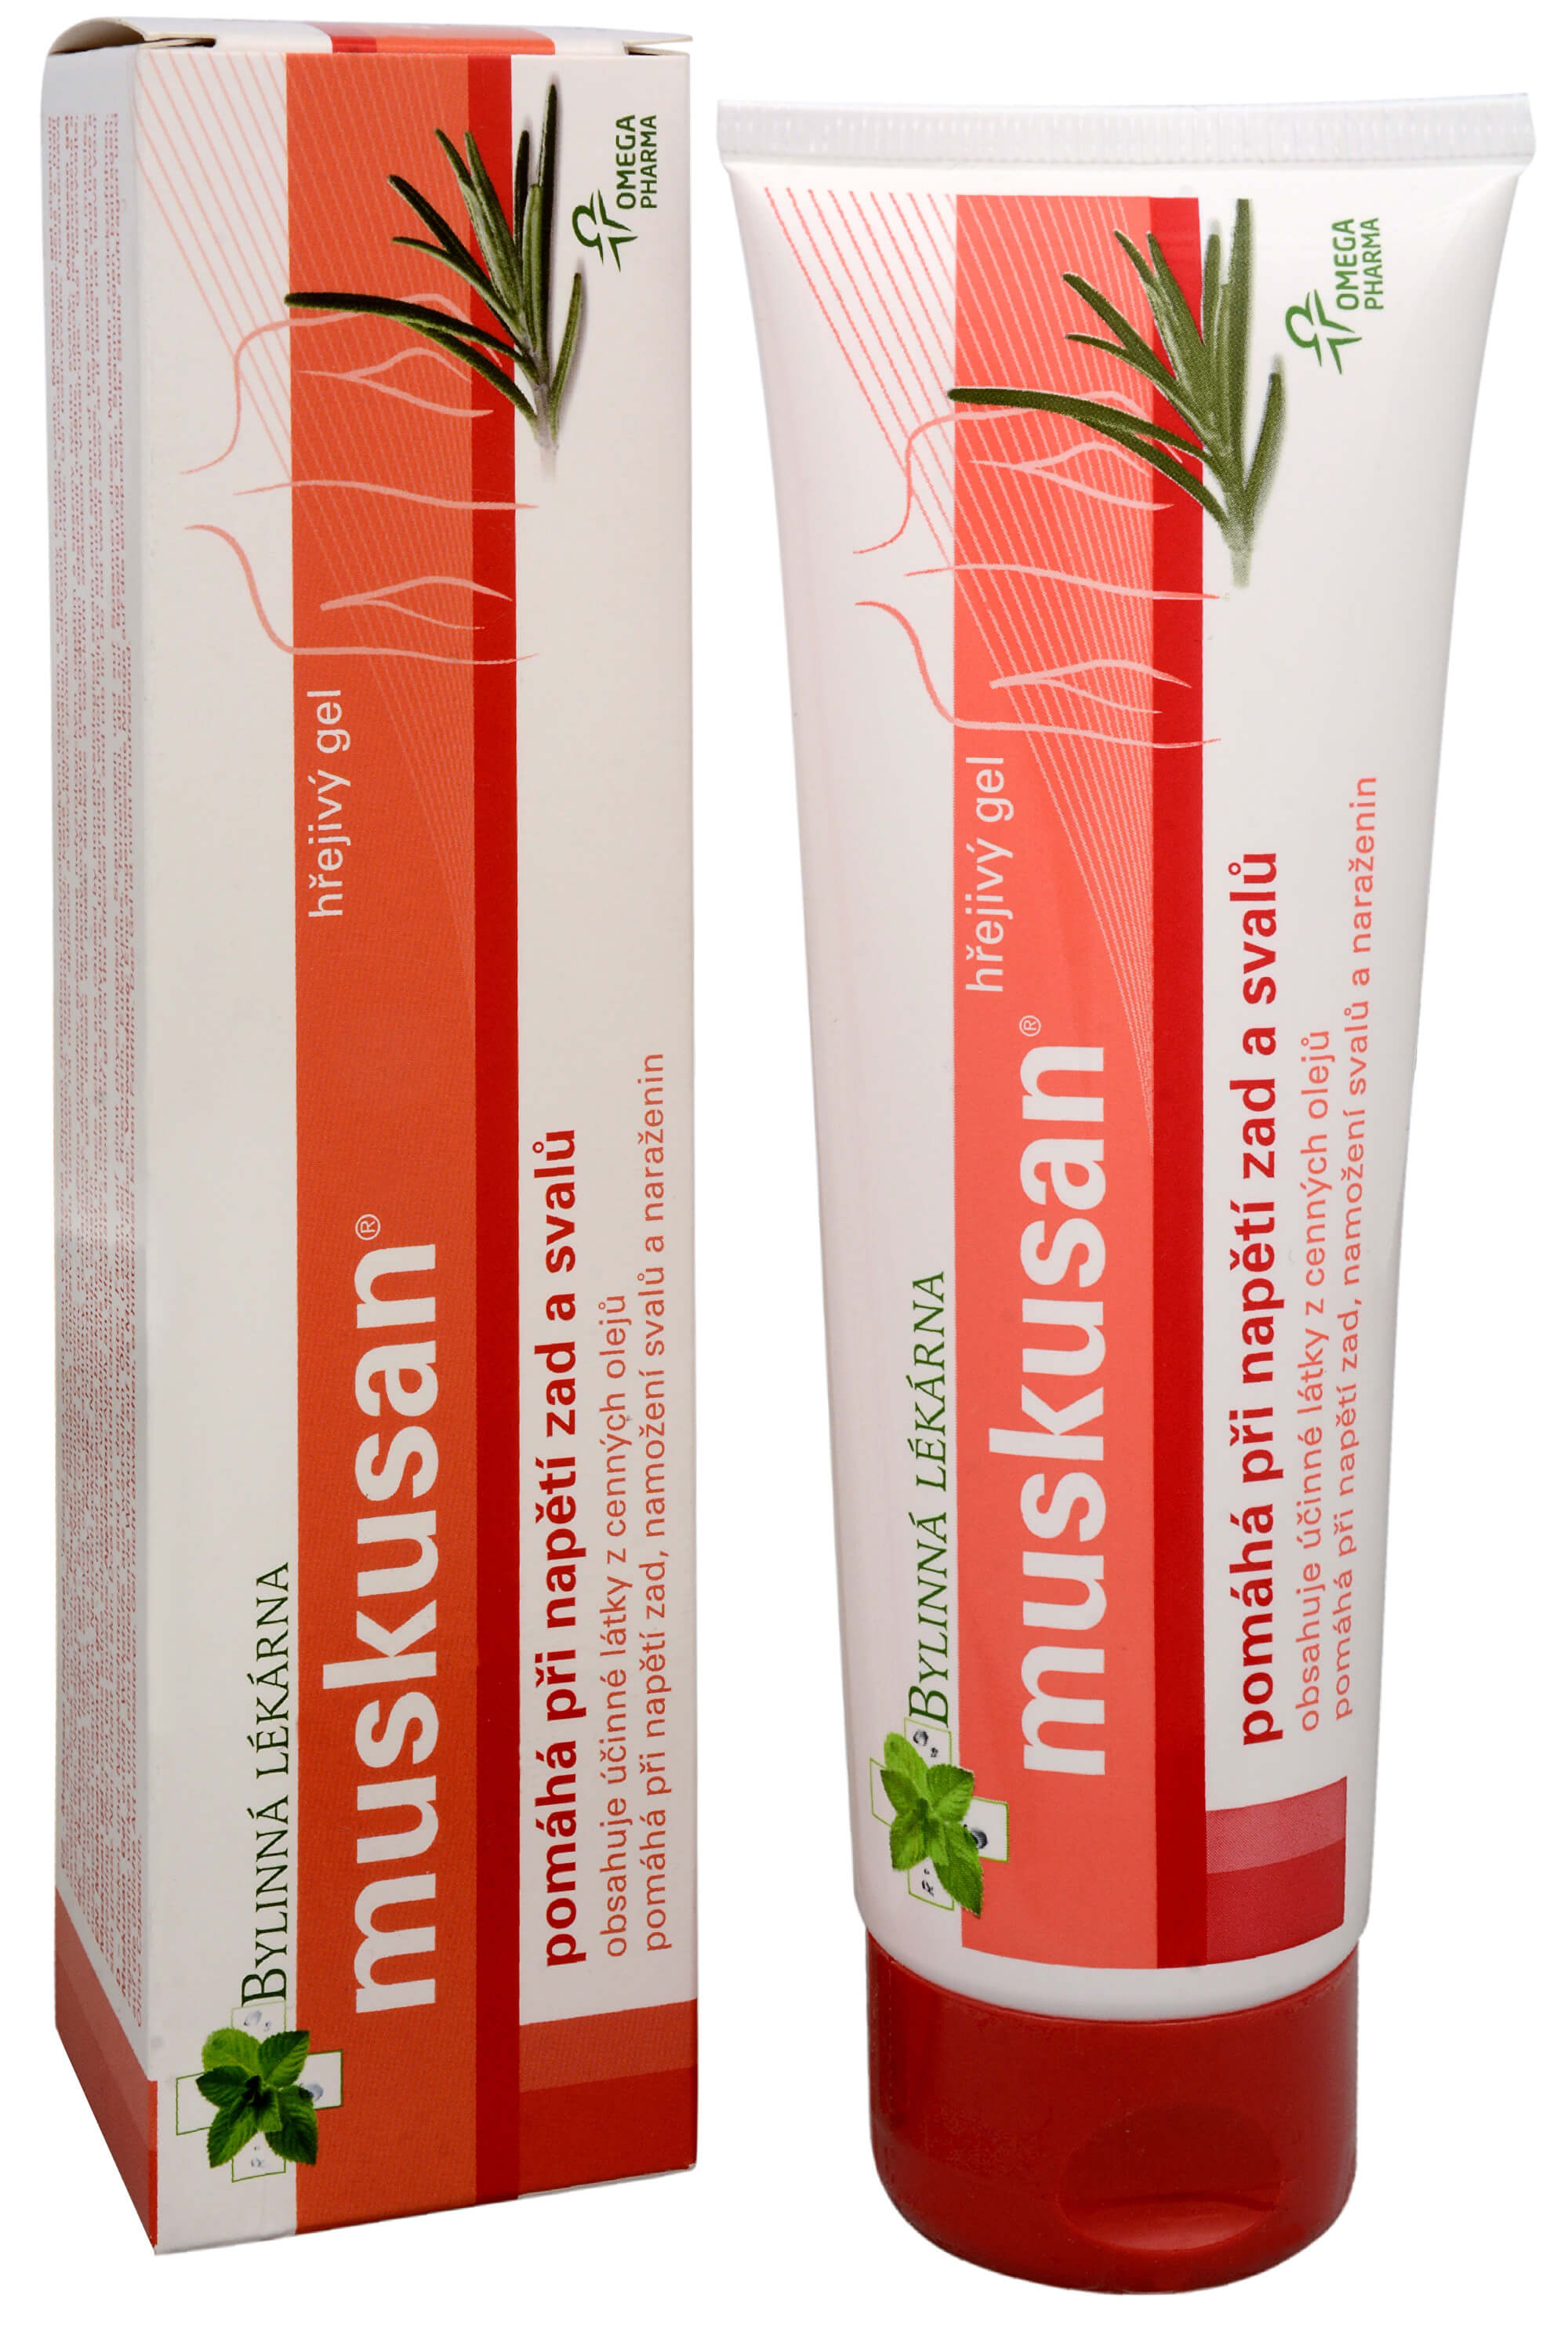 Zobrazit detail výrobku Omega Pharma Muskusan masážní hřejivý gel 120 g